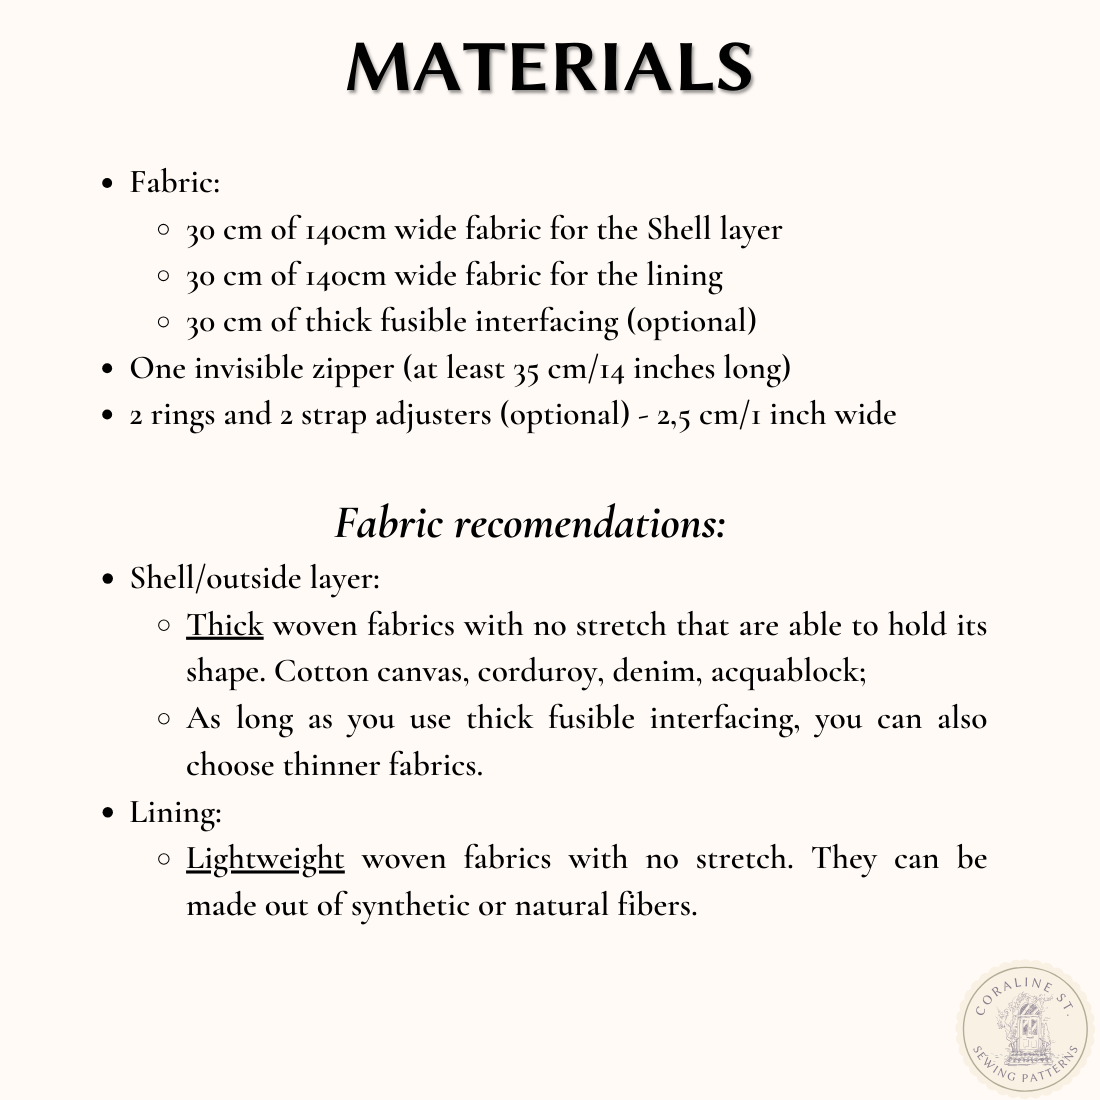 Baguette Bag FREE PDF Sewing Pattern